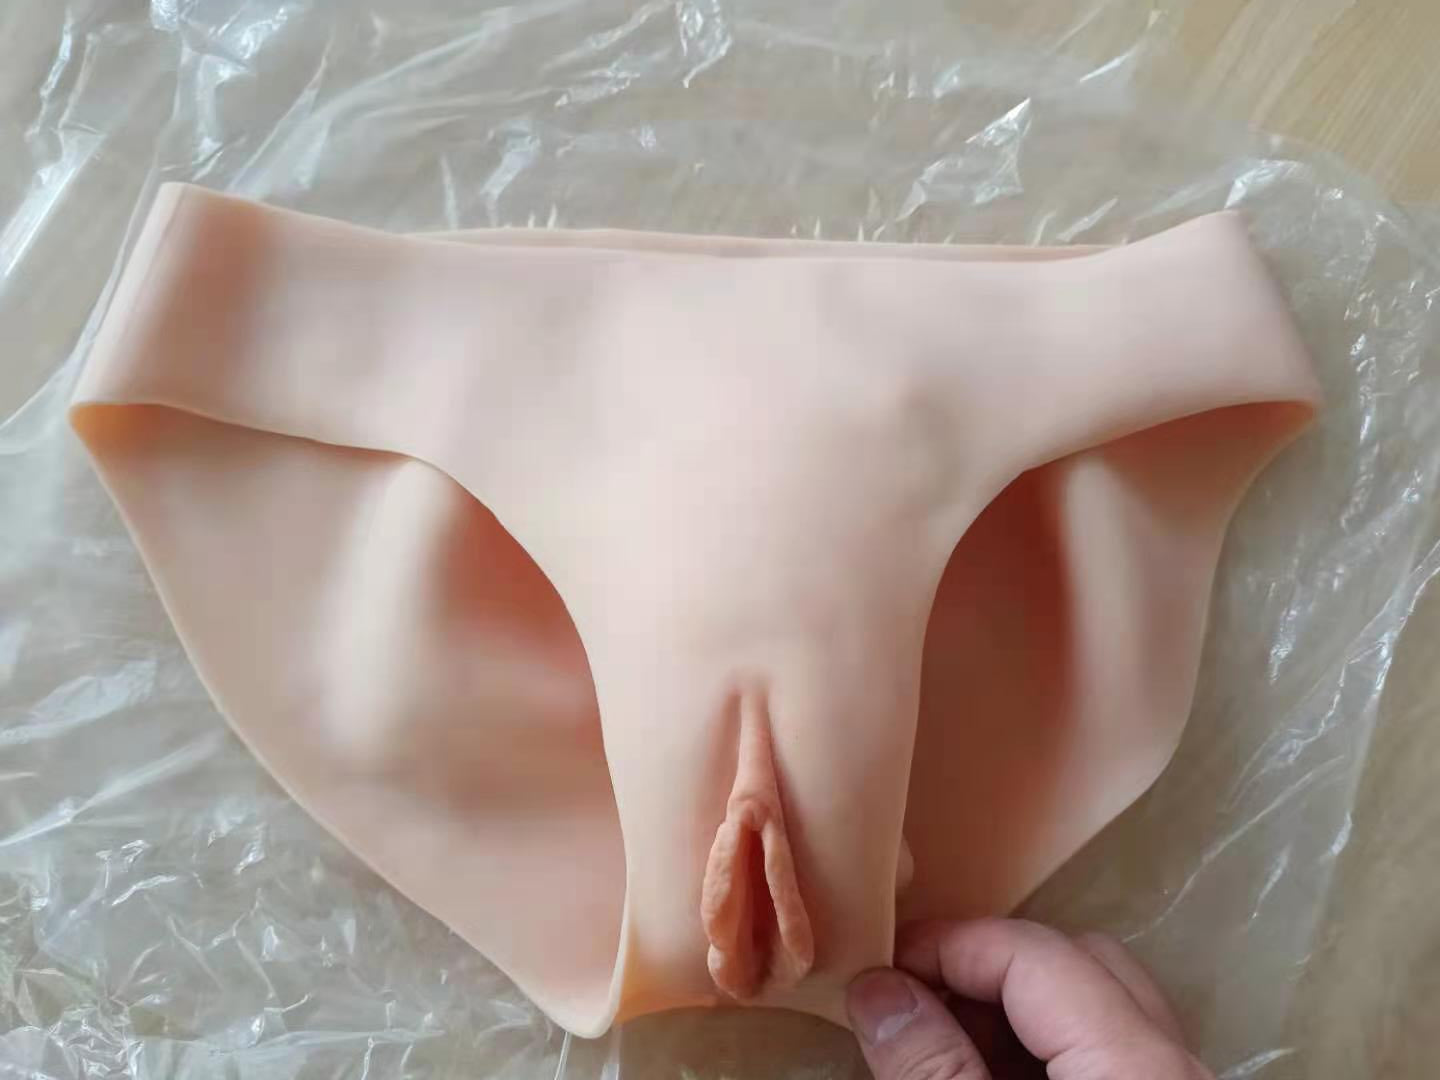 Breast Forms + Fake Vagina